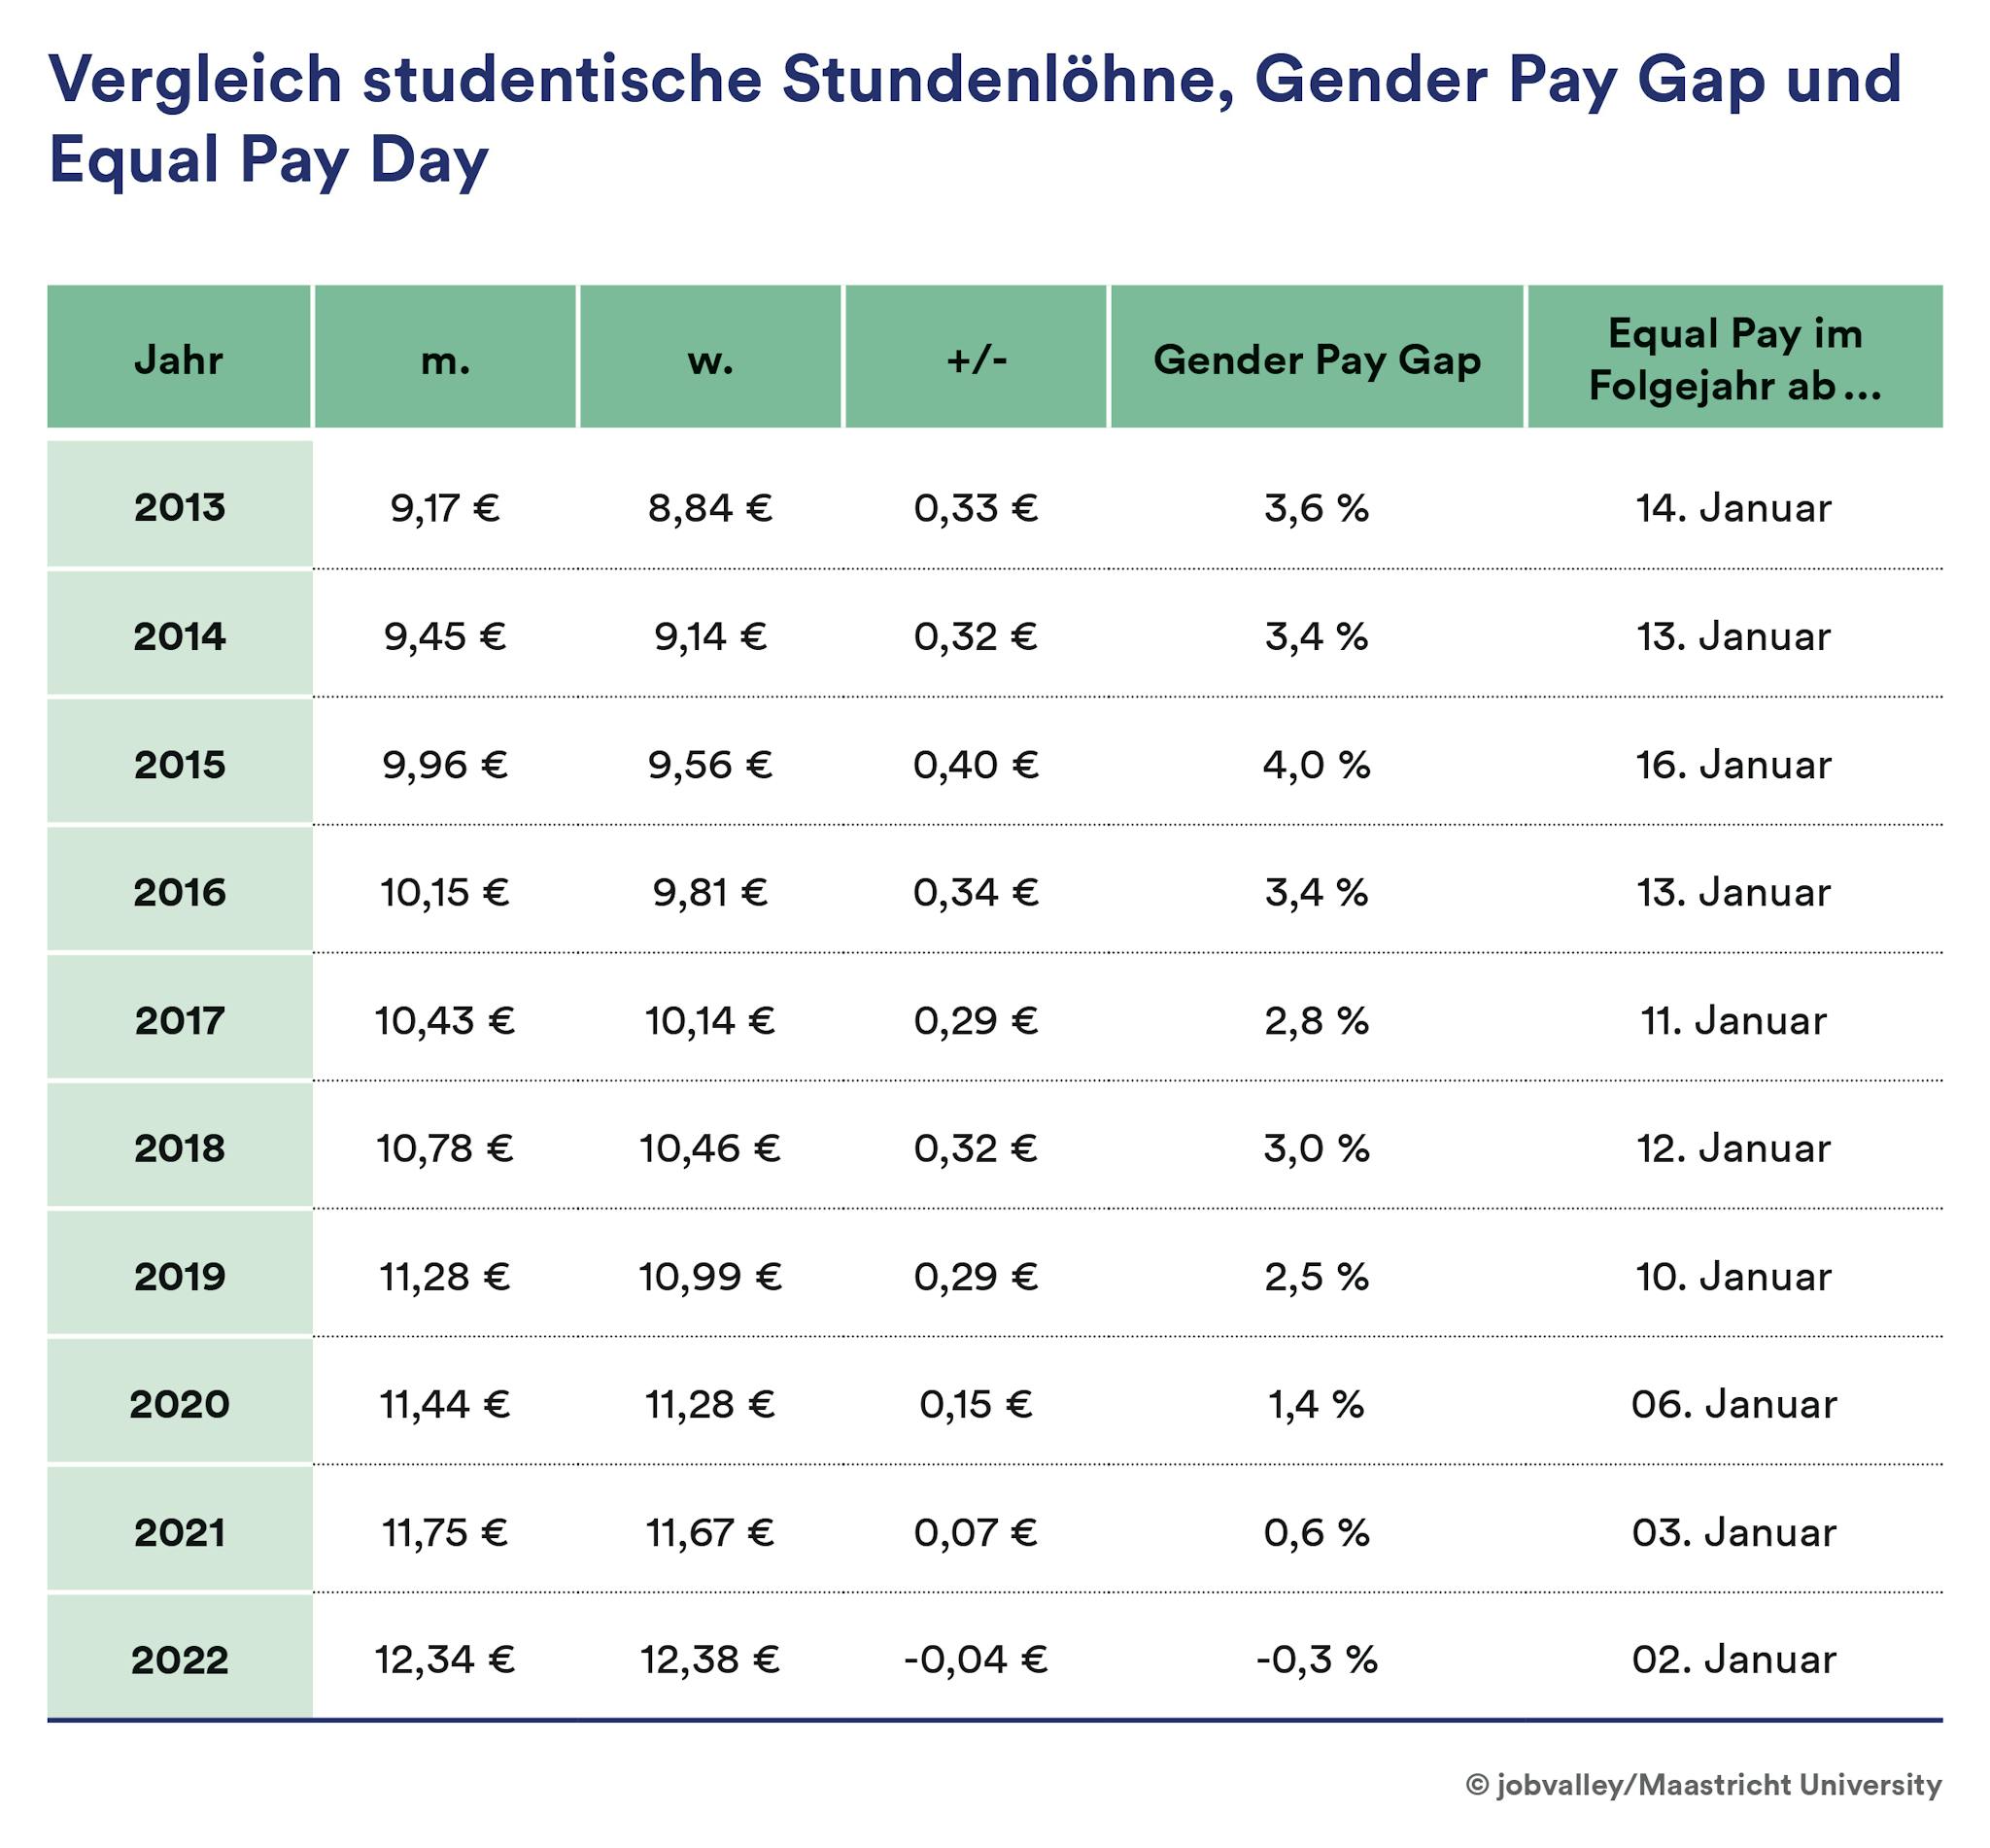 Gender Pay Gap und Equal Pay studentische Stundenlöhne